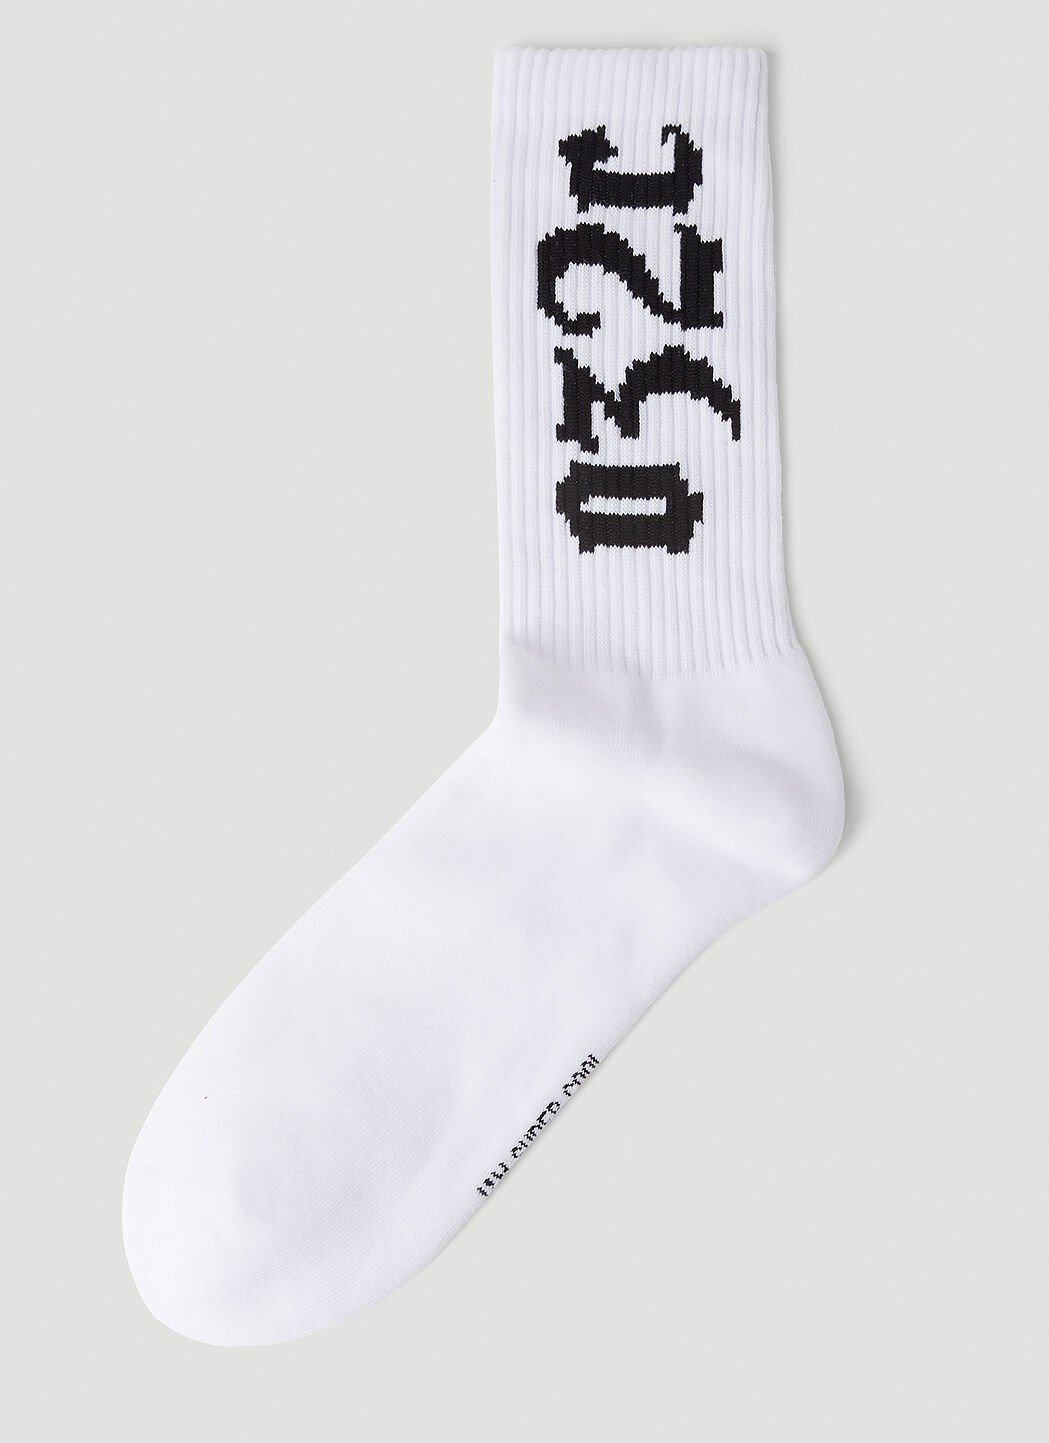 032c Cry Socks Black cee0156025